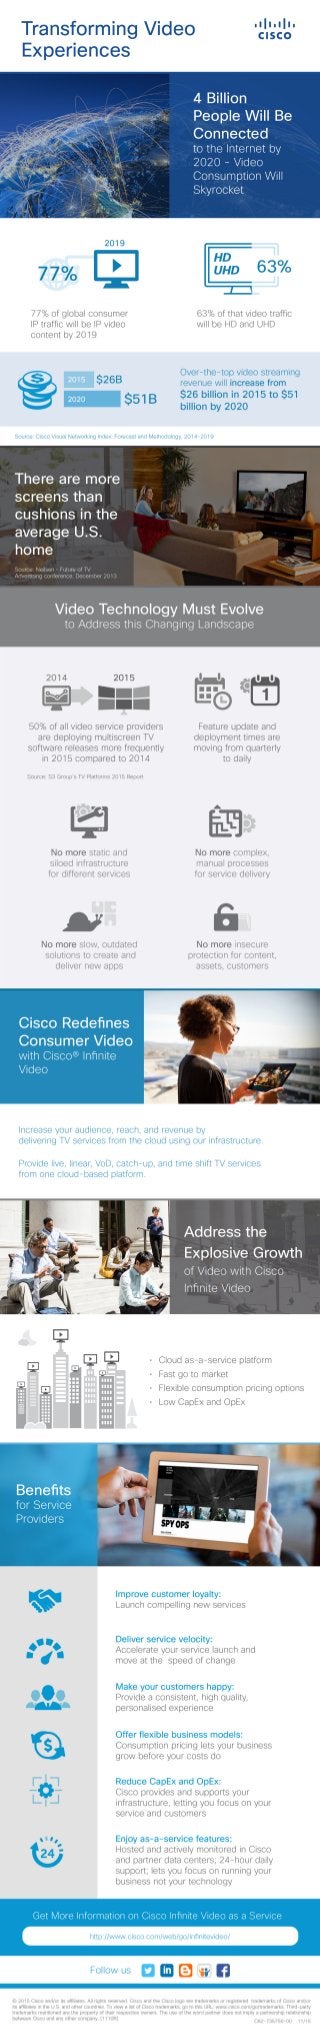 Cisco Infinite Video Infographic